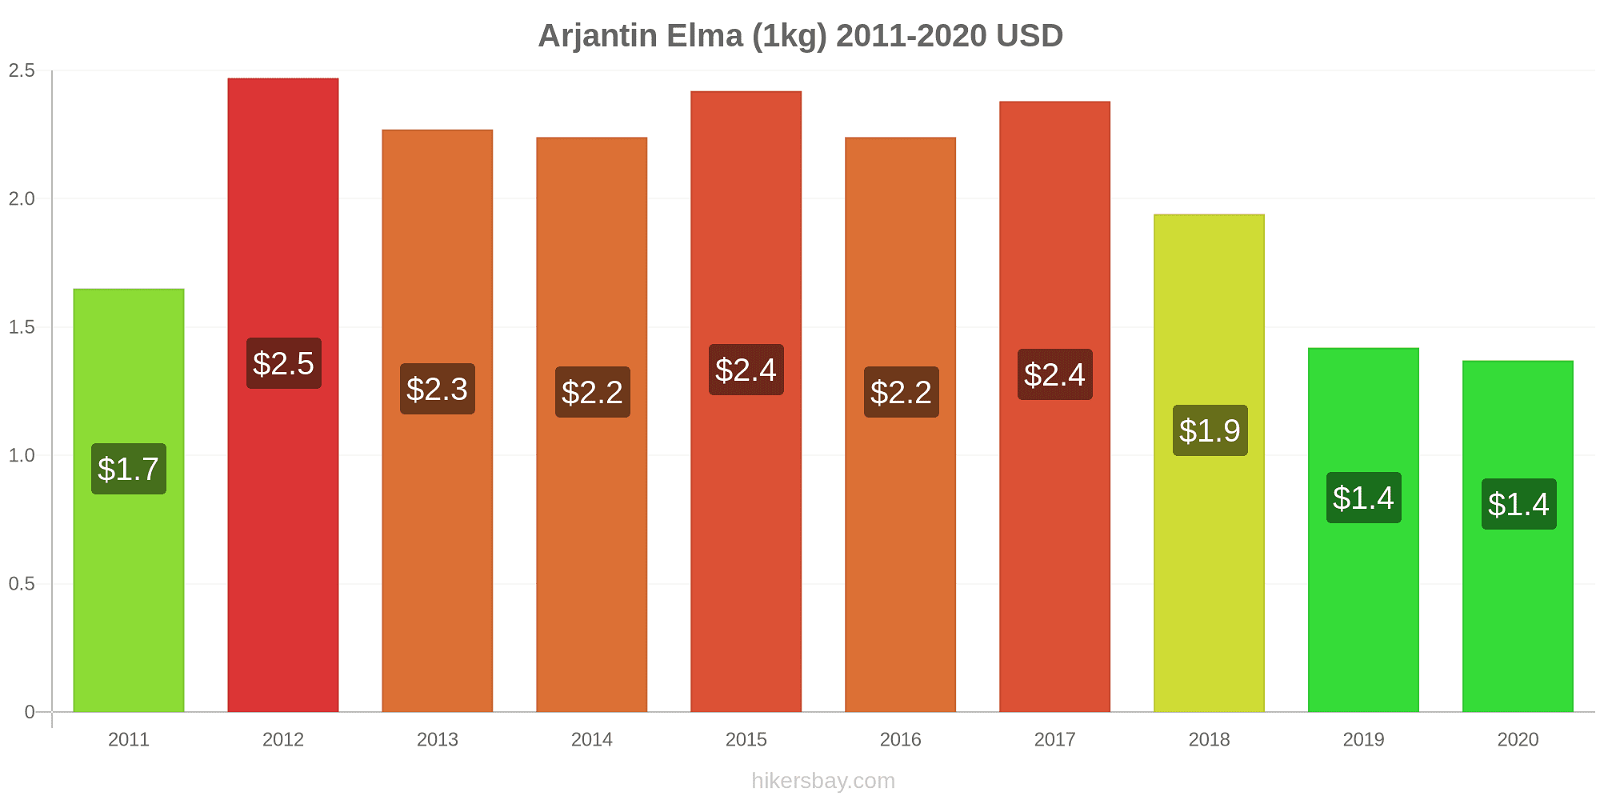 Arjantin fiyat değişiklikleri Elma (1kg) hikersbay.com